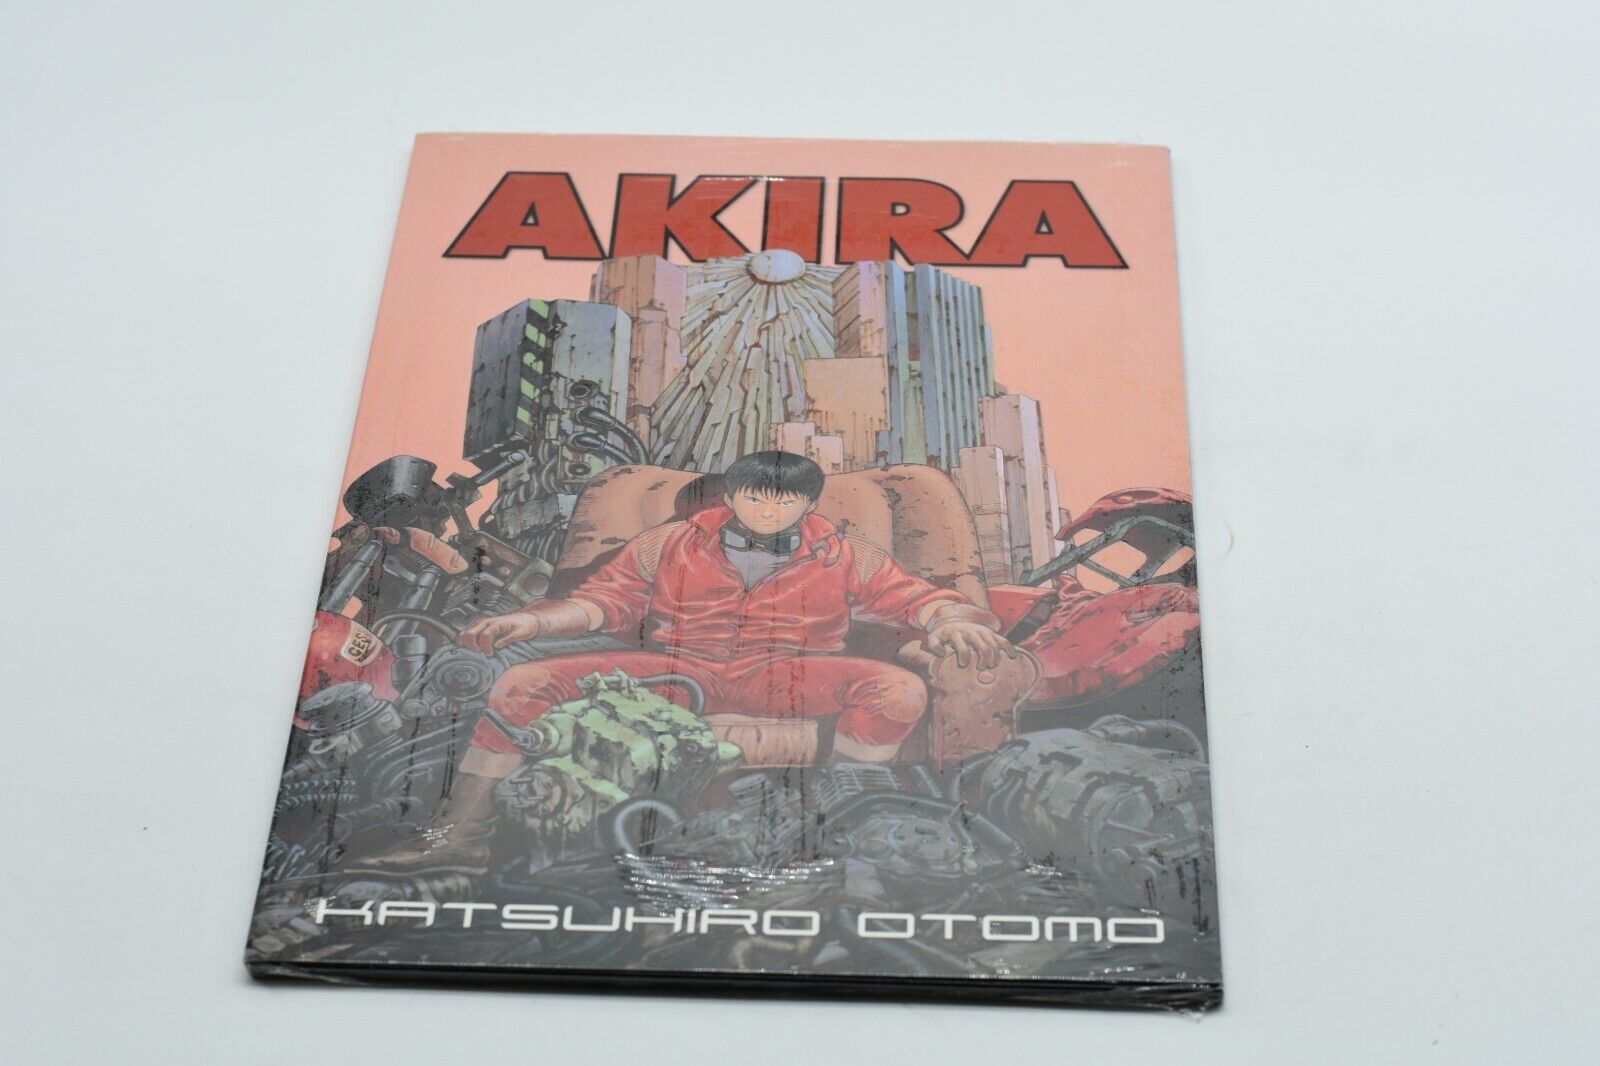 AKIRA Katsuhiro Otomo portfolio brand new/sealed- BIG 15.25x10 inches VHTF RARE 